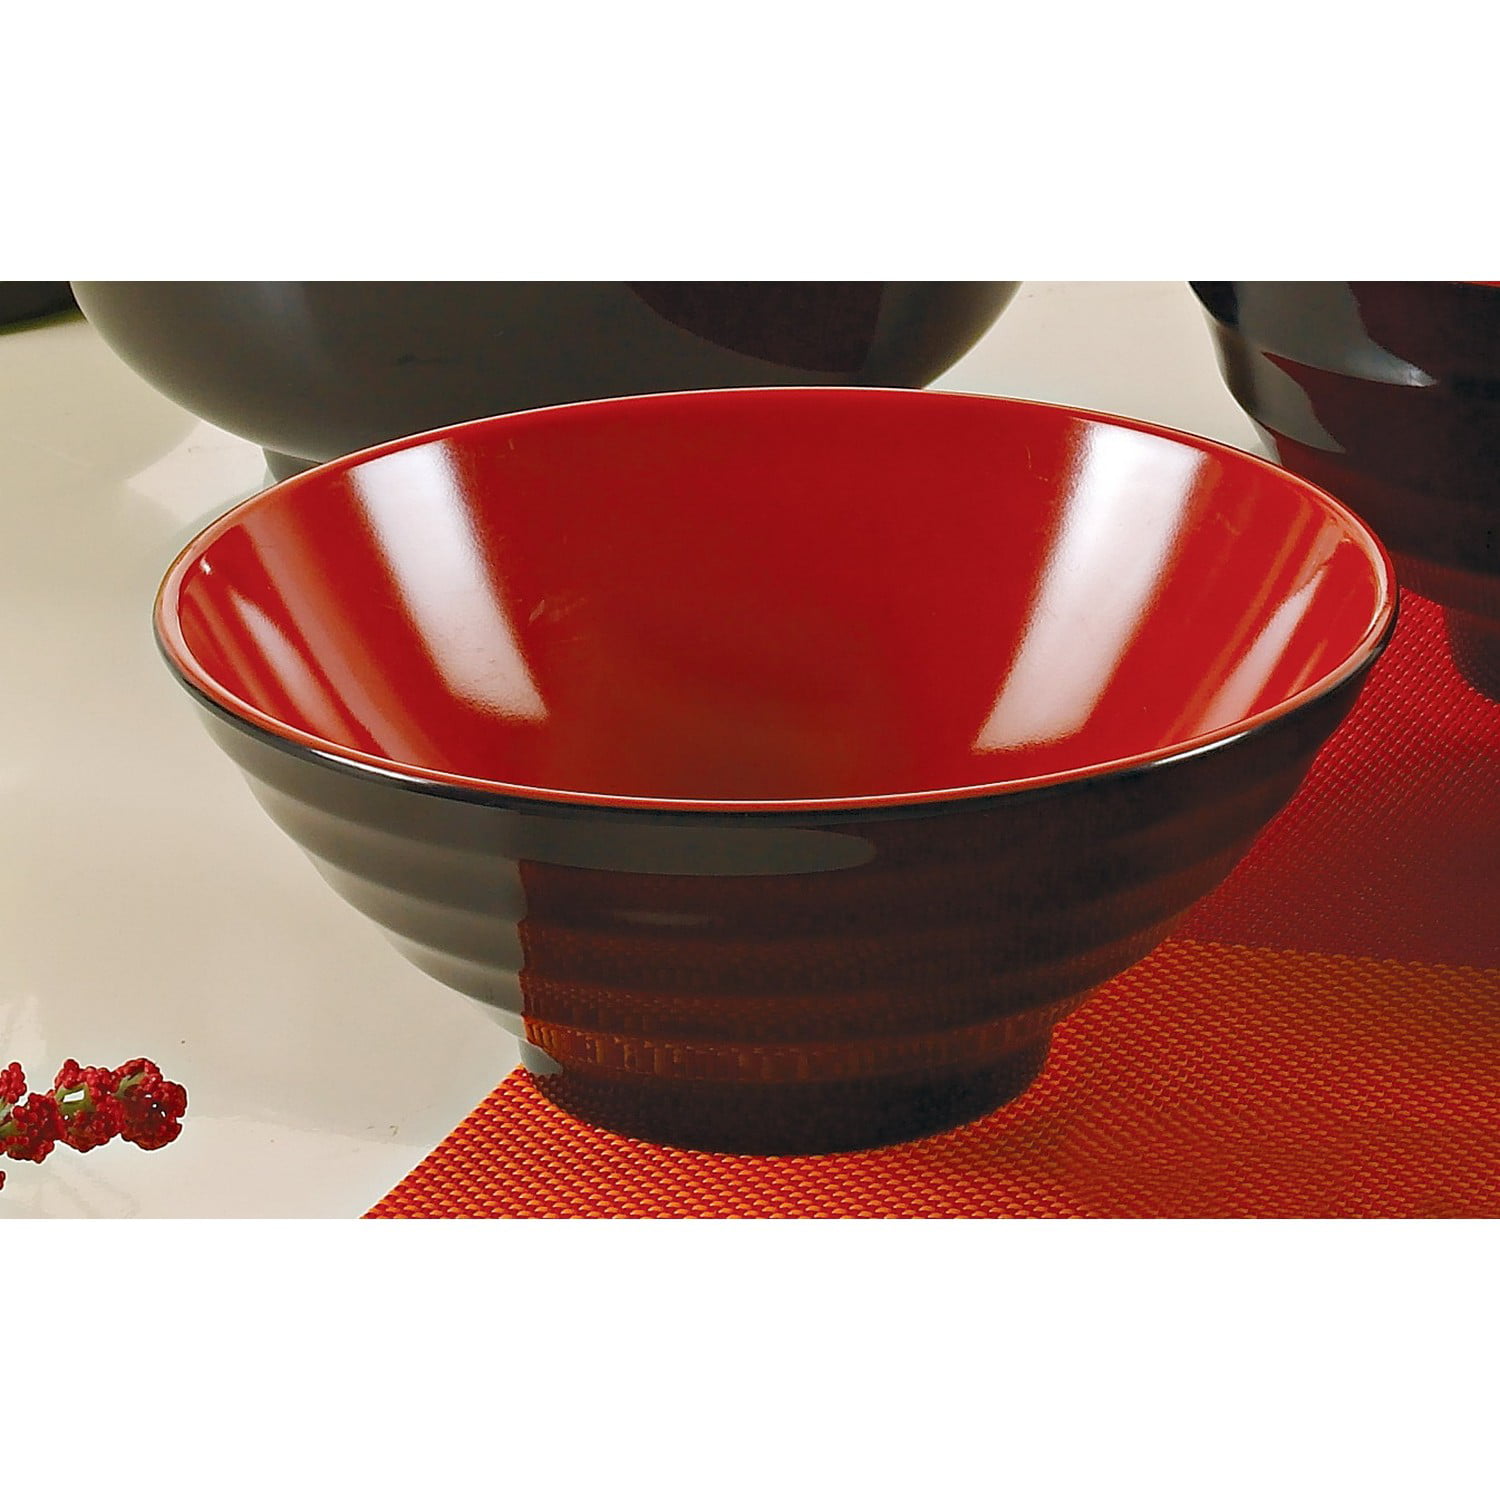 味噌湯ボウルLarge Melamine Noodle Soup Bowls and Spoons Red and Black Set of 4 